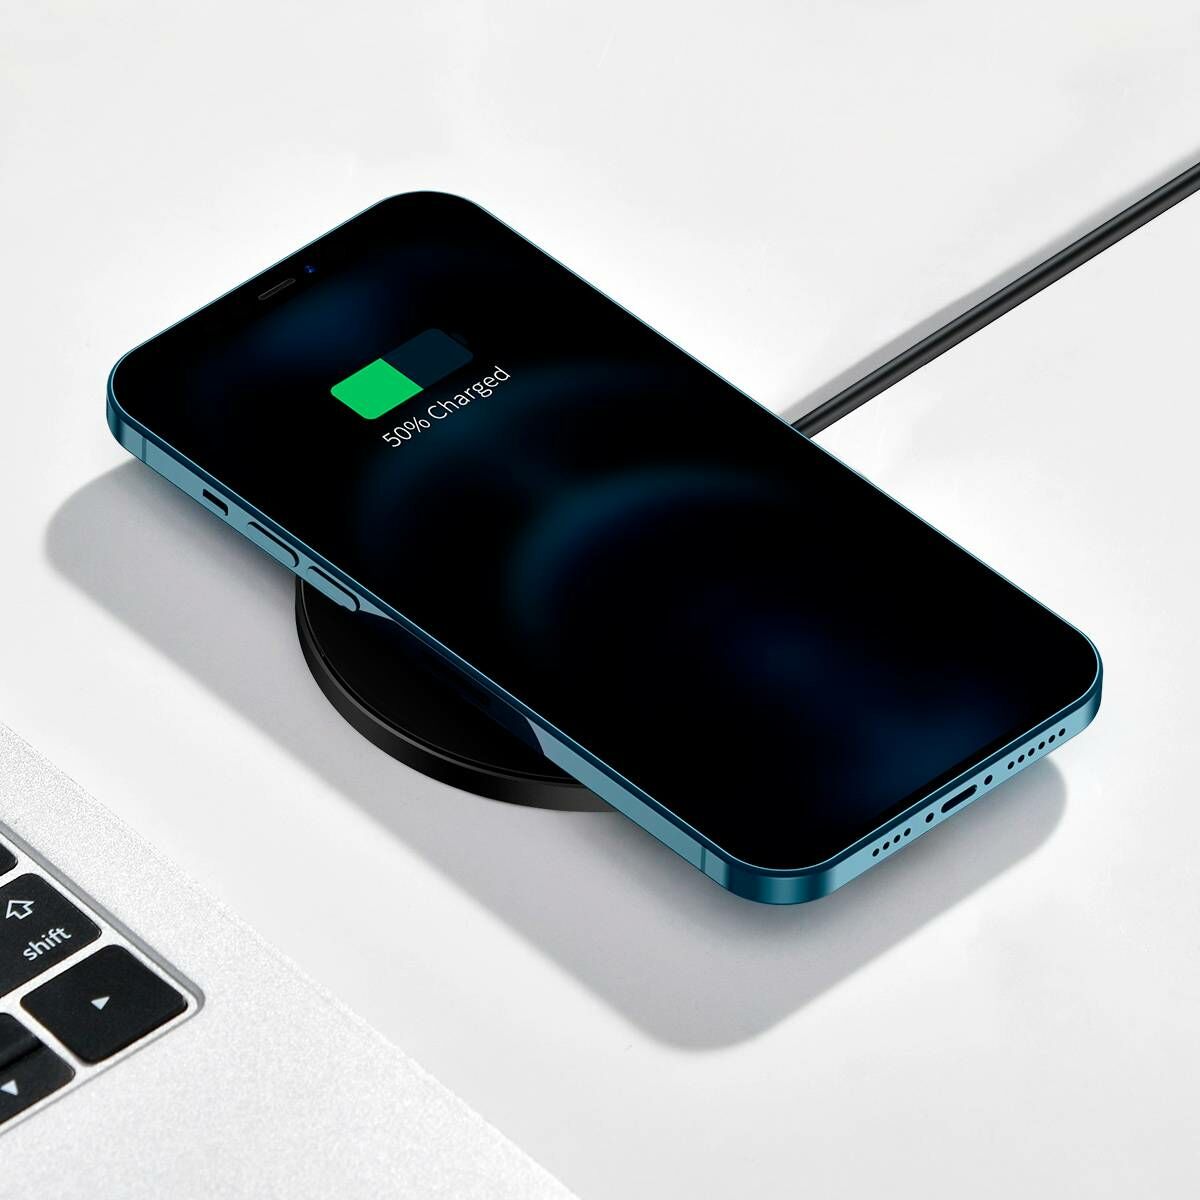 Baseus vezeték nélküli töltő, Simple Magnetic, iPhone 12 modellhez, 15W, fekete (WXJK-E01)